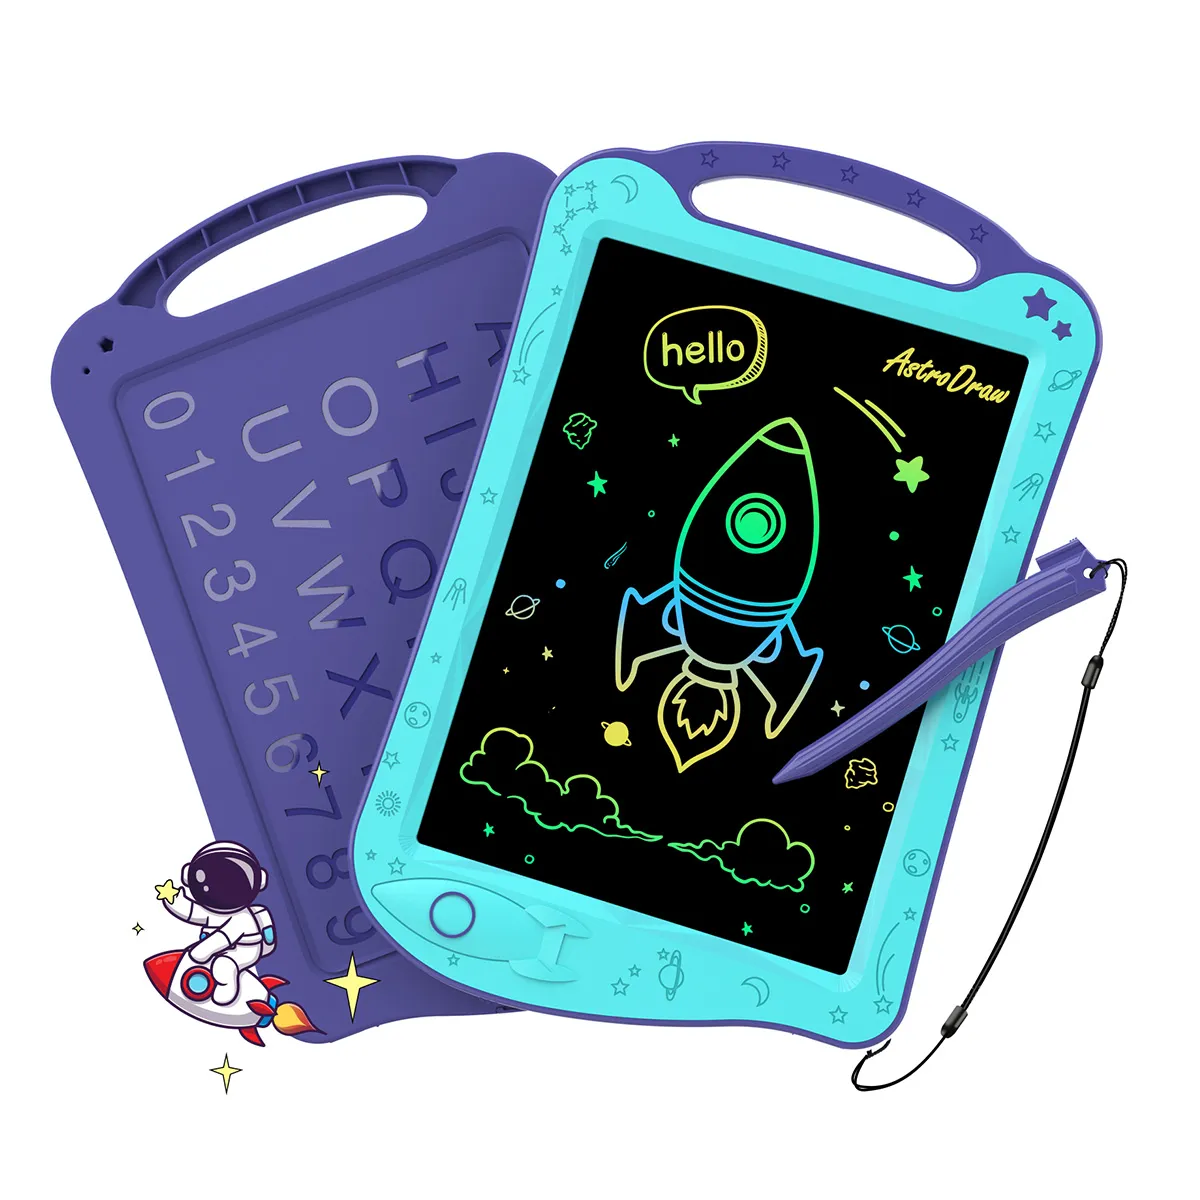 AstroDraw 컬러 드로잉 태블릿, 어린이 여행 활동 장난감, 스페이스 낙서 보드, 자폐증 감각, 유아 생일 선물